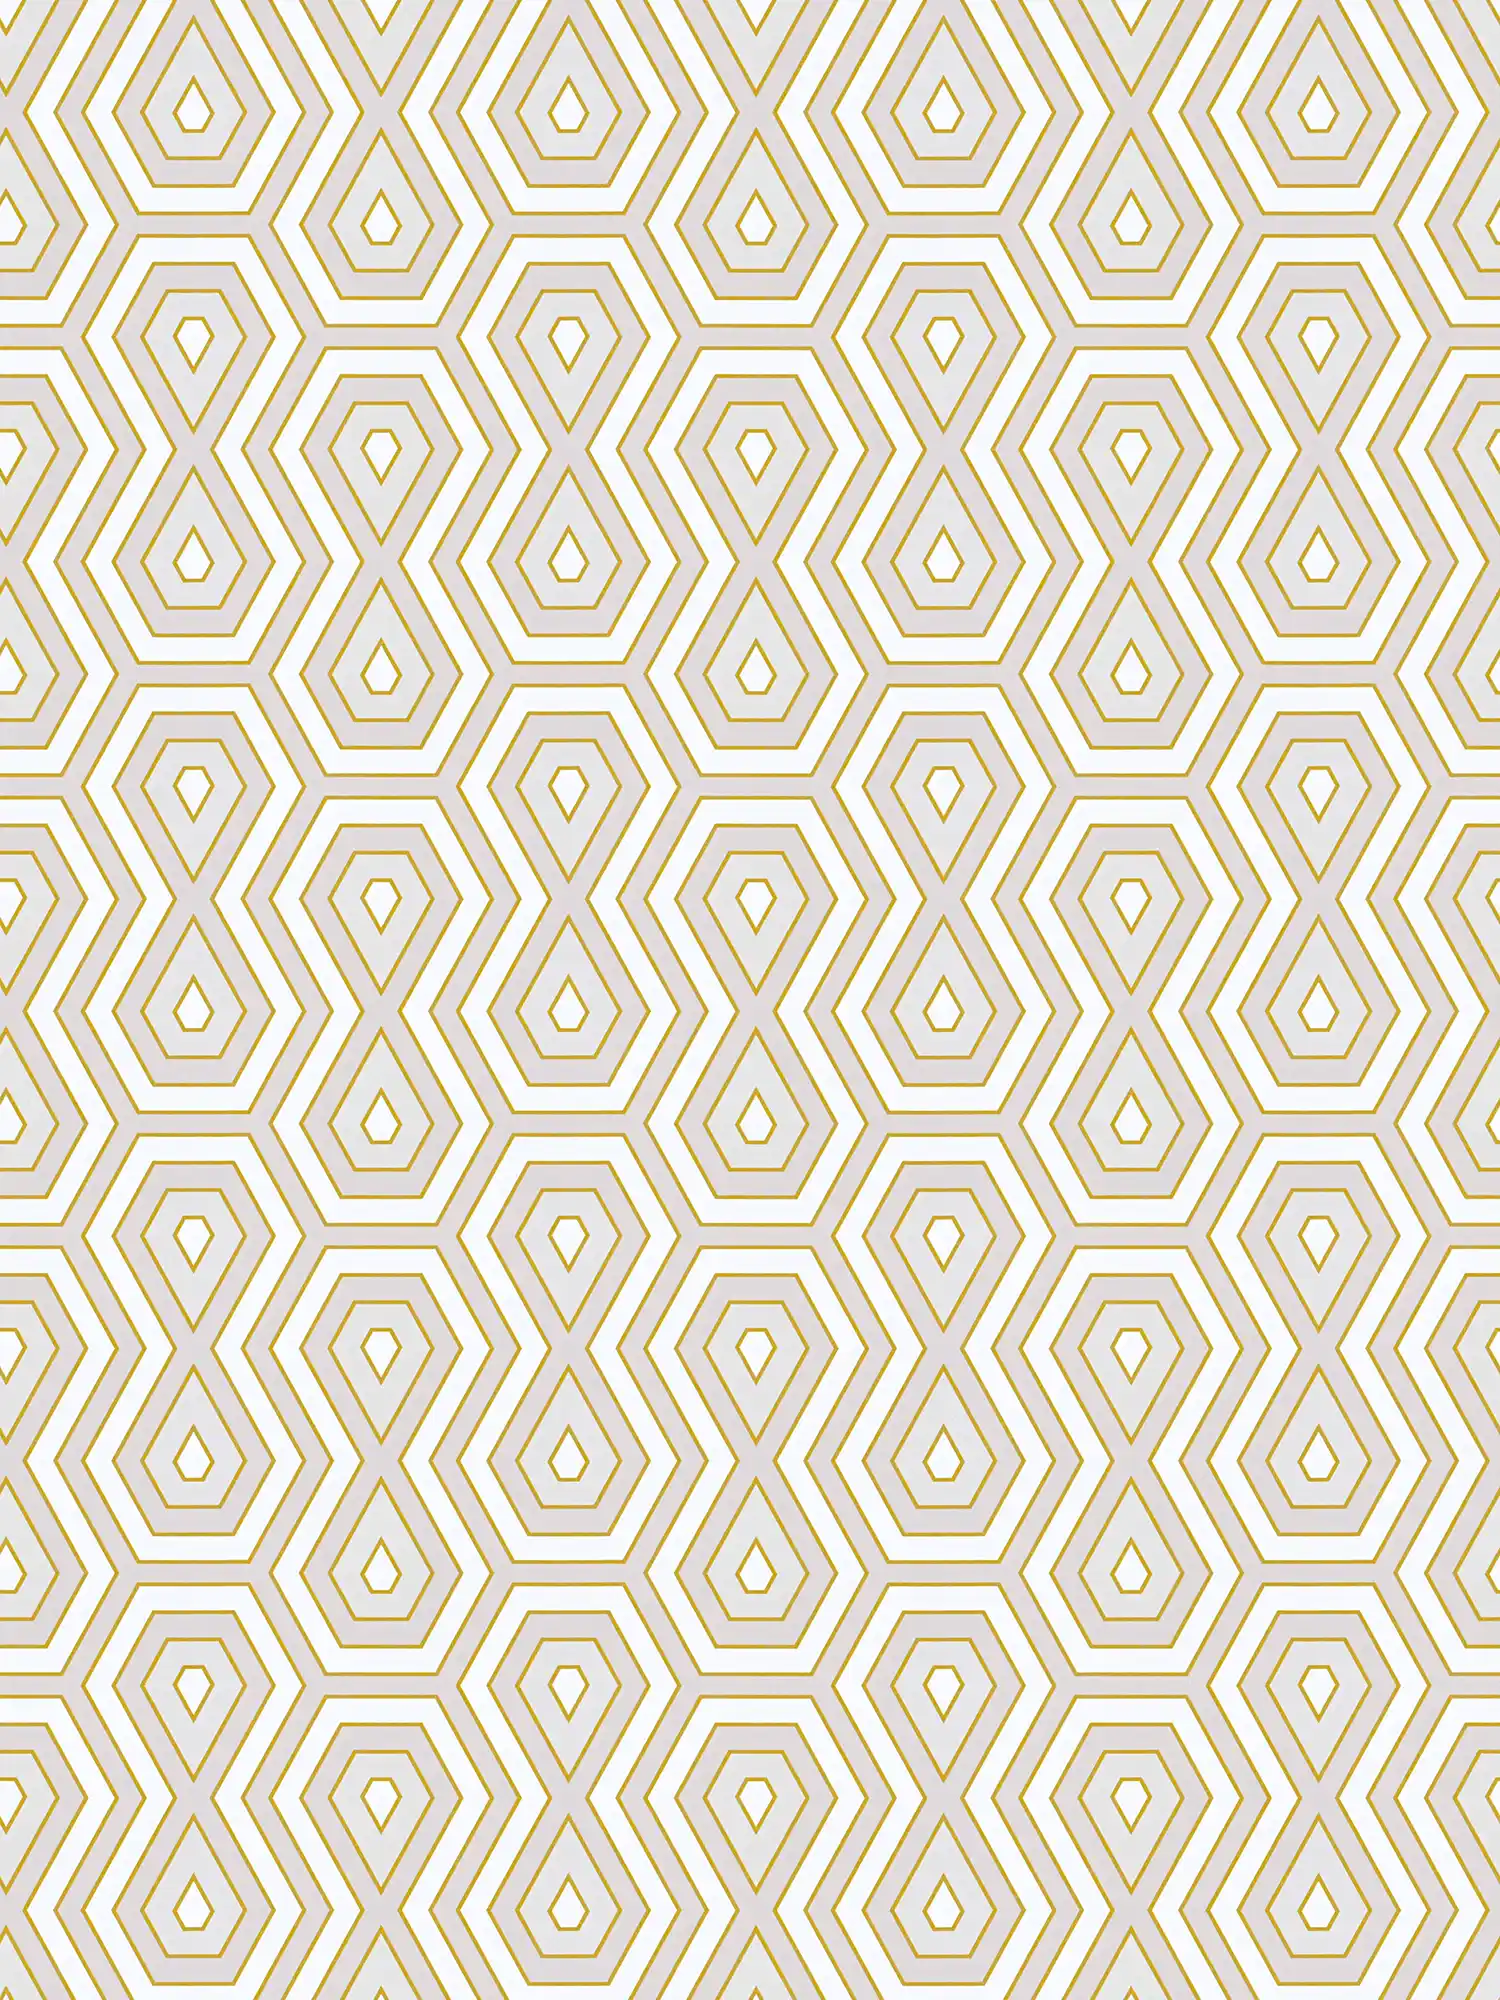 Behang grijs & goud met grafisch ontwerp in retrostijl - goud, wit, grijs
